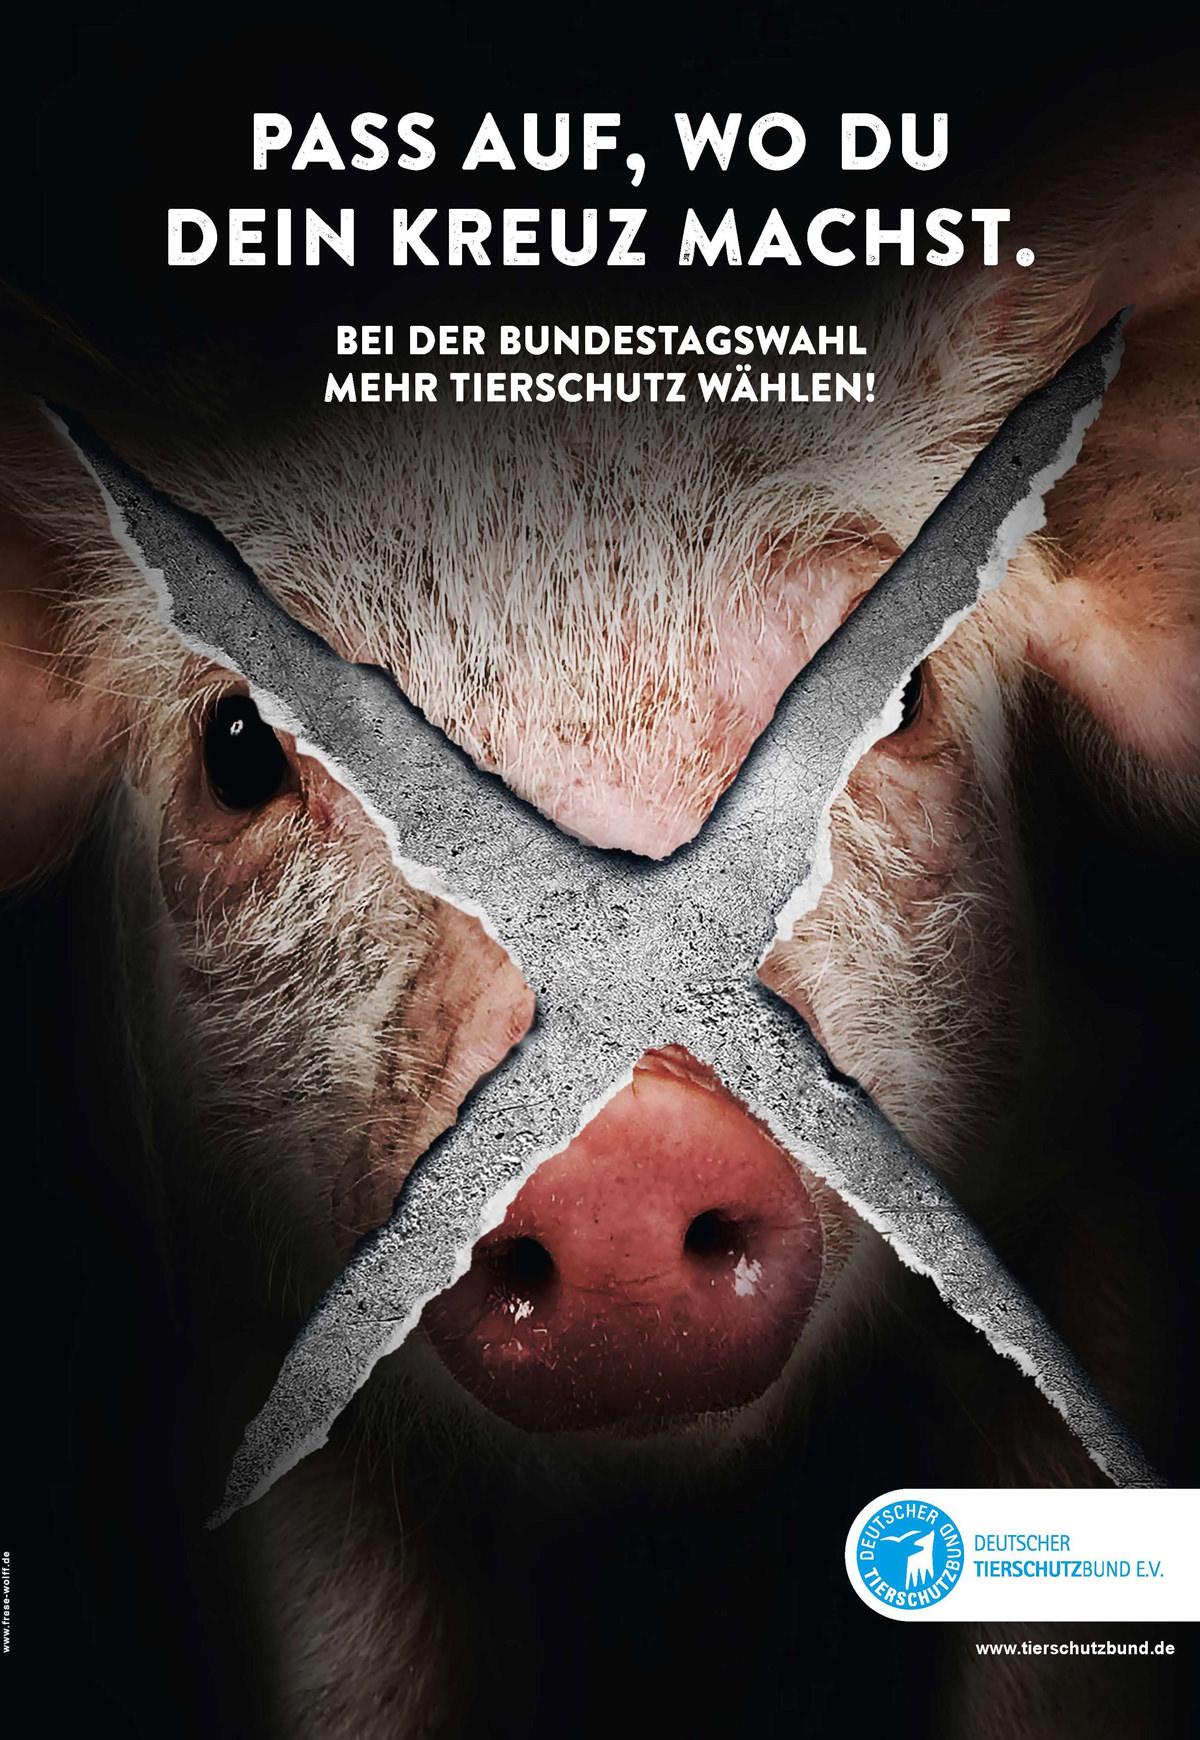 Mit Kampagnenplakaten macht der Deutsche Tierschutzbund Wählerinnen und Wähler darauf aufmerksam, dass sie mit ihrer Wahlentscheidung auch den Grundstein für den Tierschutz in den nächsten Jahren legen.